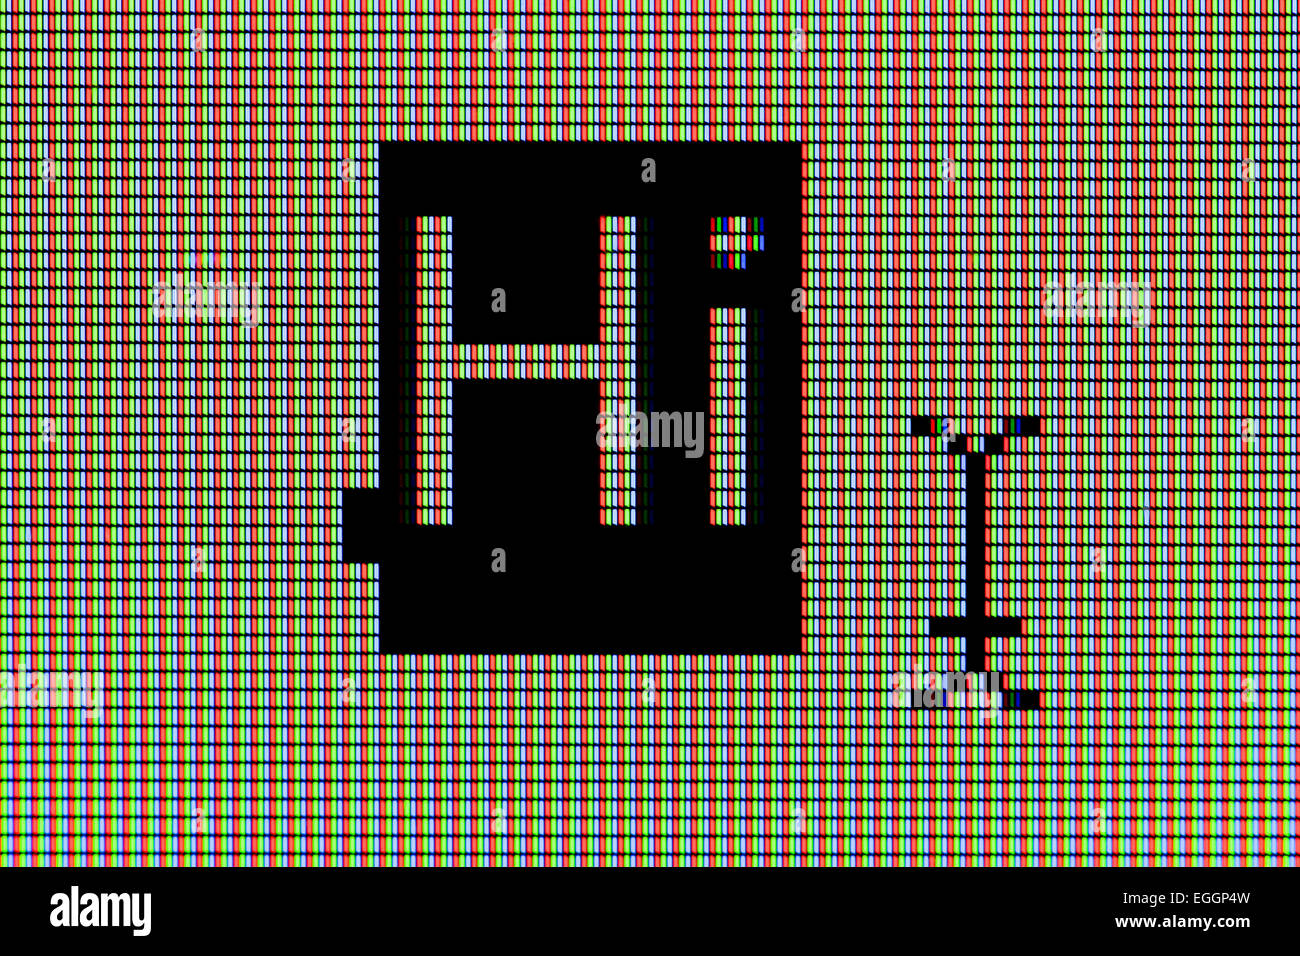 Primo piano della parola "Hi" sul display a cristalli liquidi dello schermo del computer Foto Stock